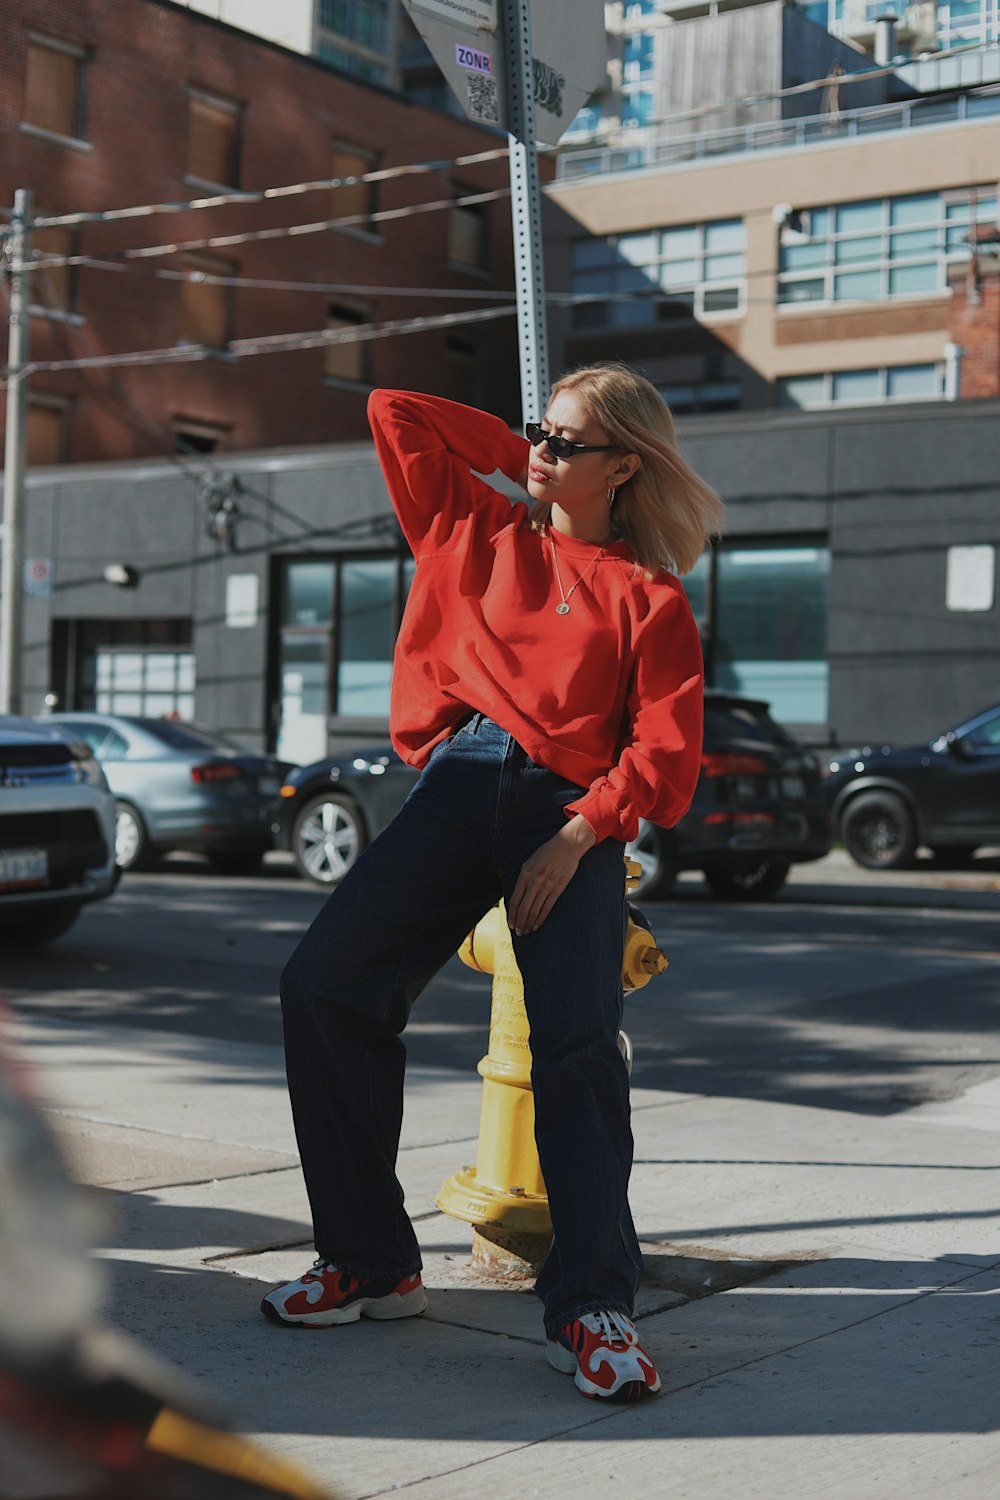 Frau in rotem Kapuzenpullover und schwarzer Hose geht tagsüber auf der Straße spazieren